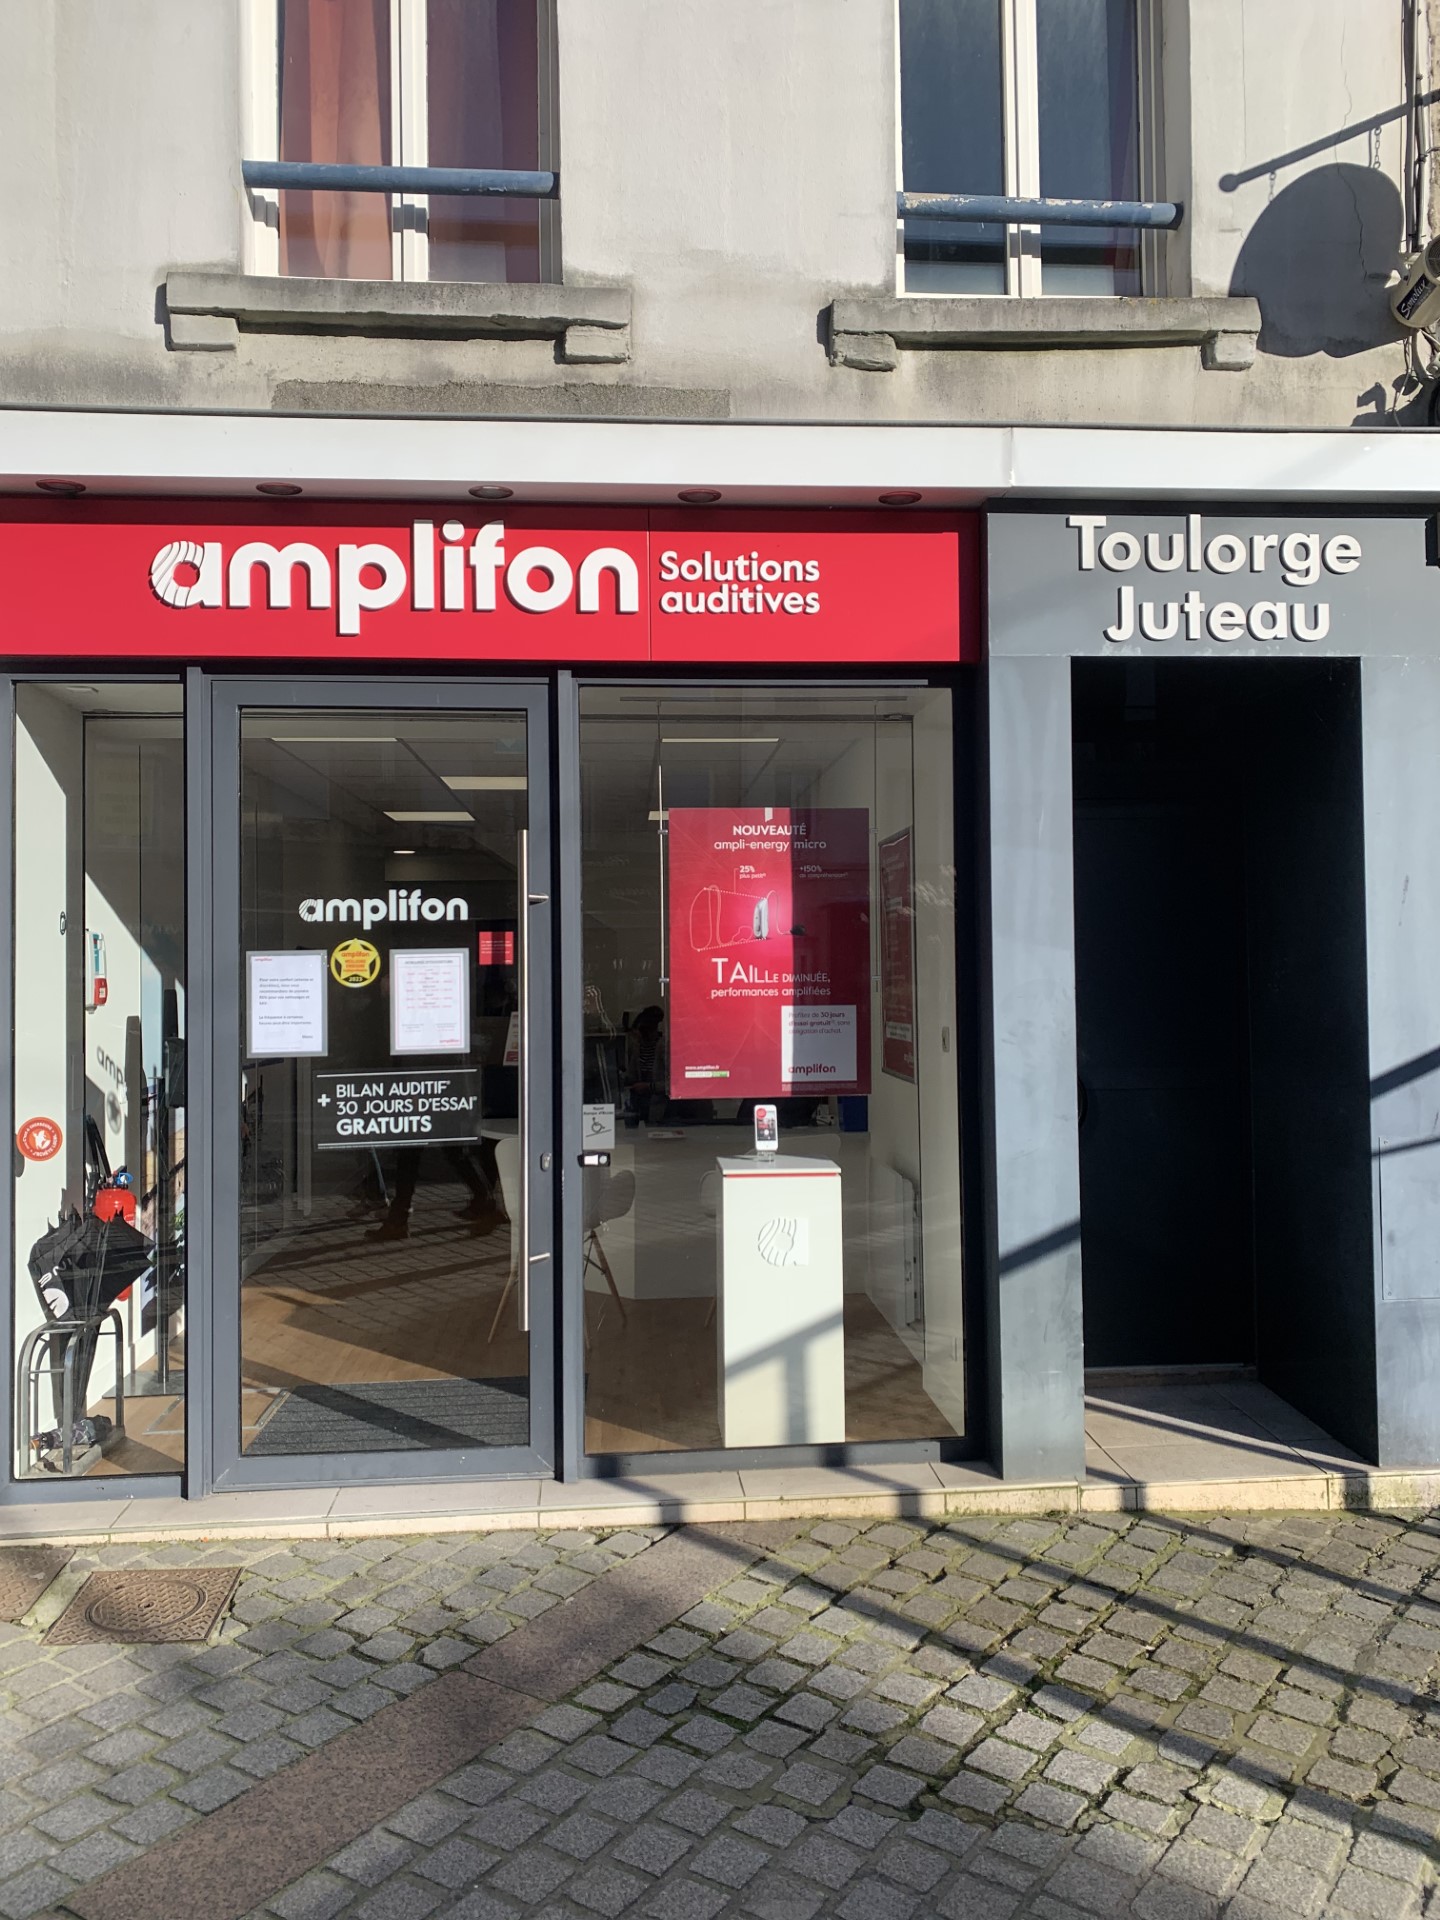 Images Amplifon Audioprothésiste Toulorge Juteau Cherbourg